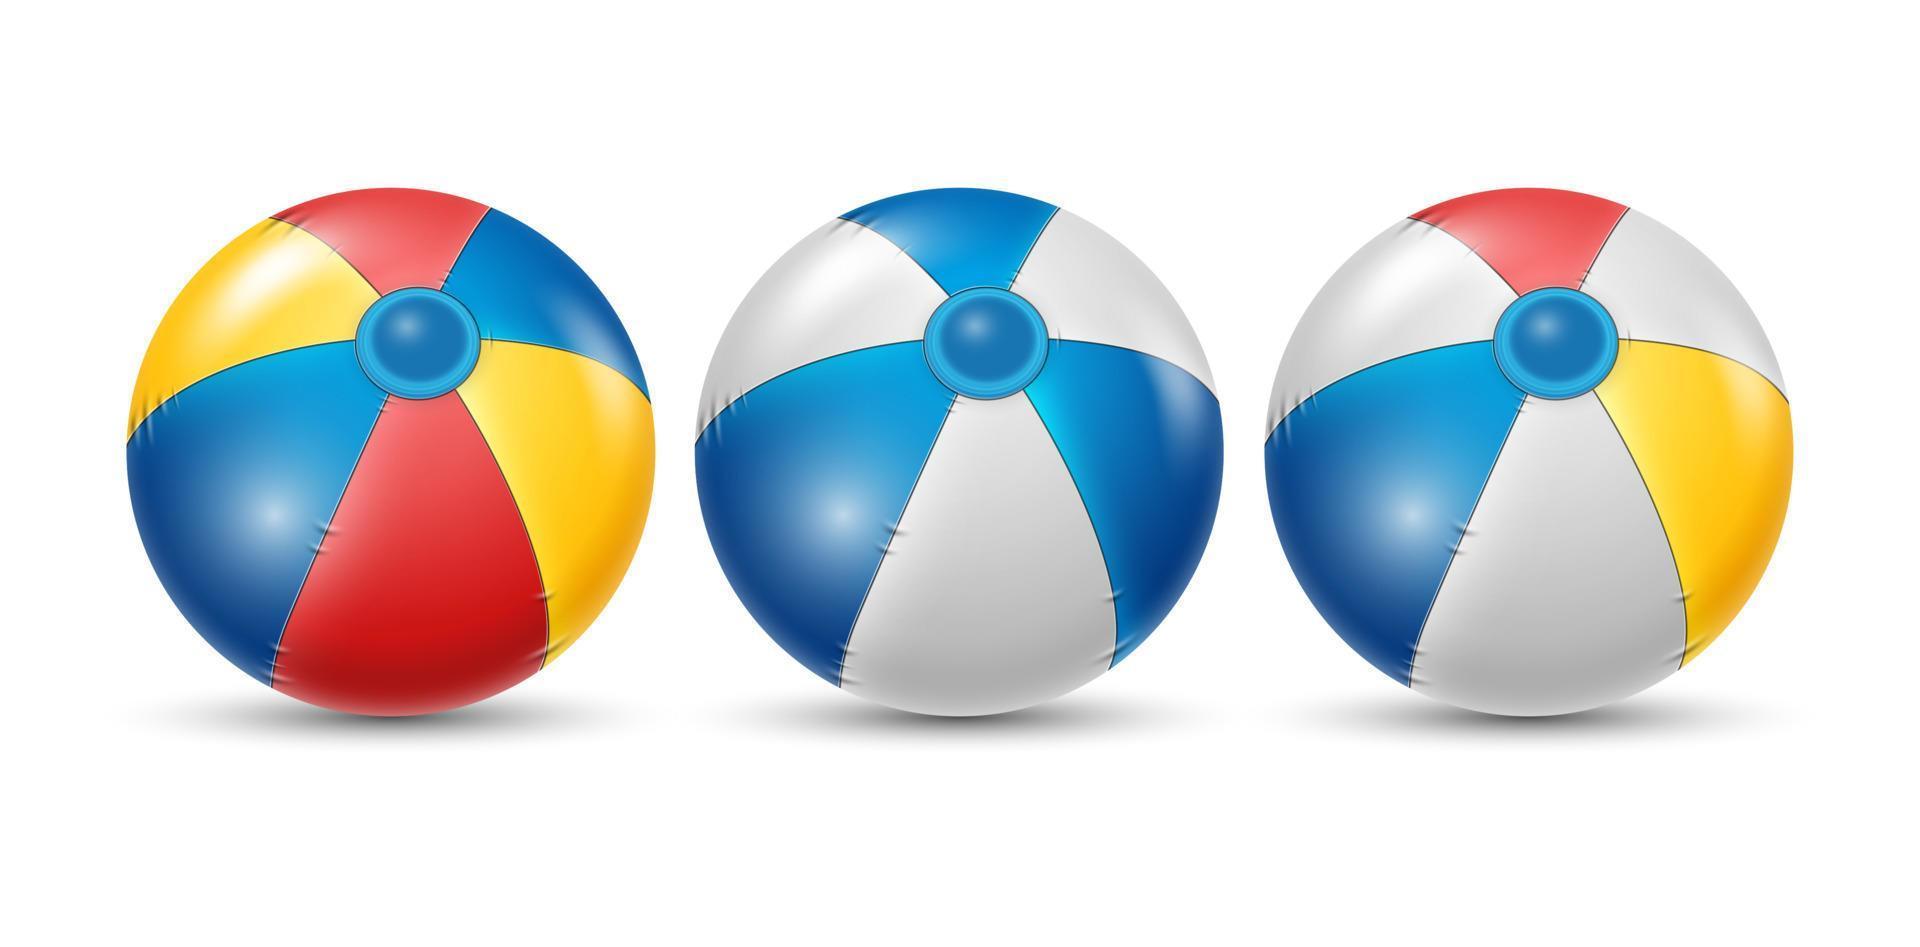 pelota de playa colorida con un juego de colores diferente. pelota de playa blanca, amarilla y azul aislada en fondo blanco. ilustración vectorial vector